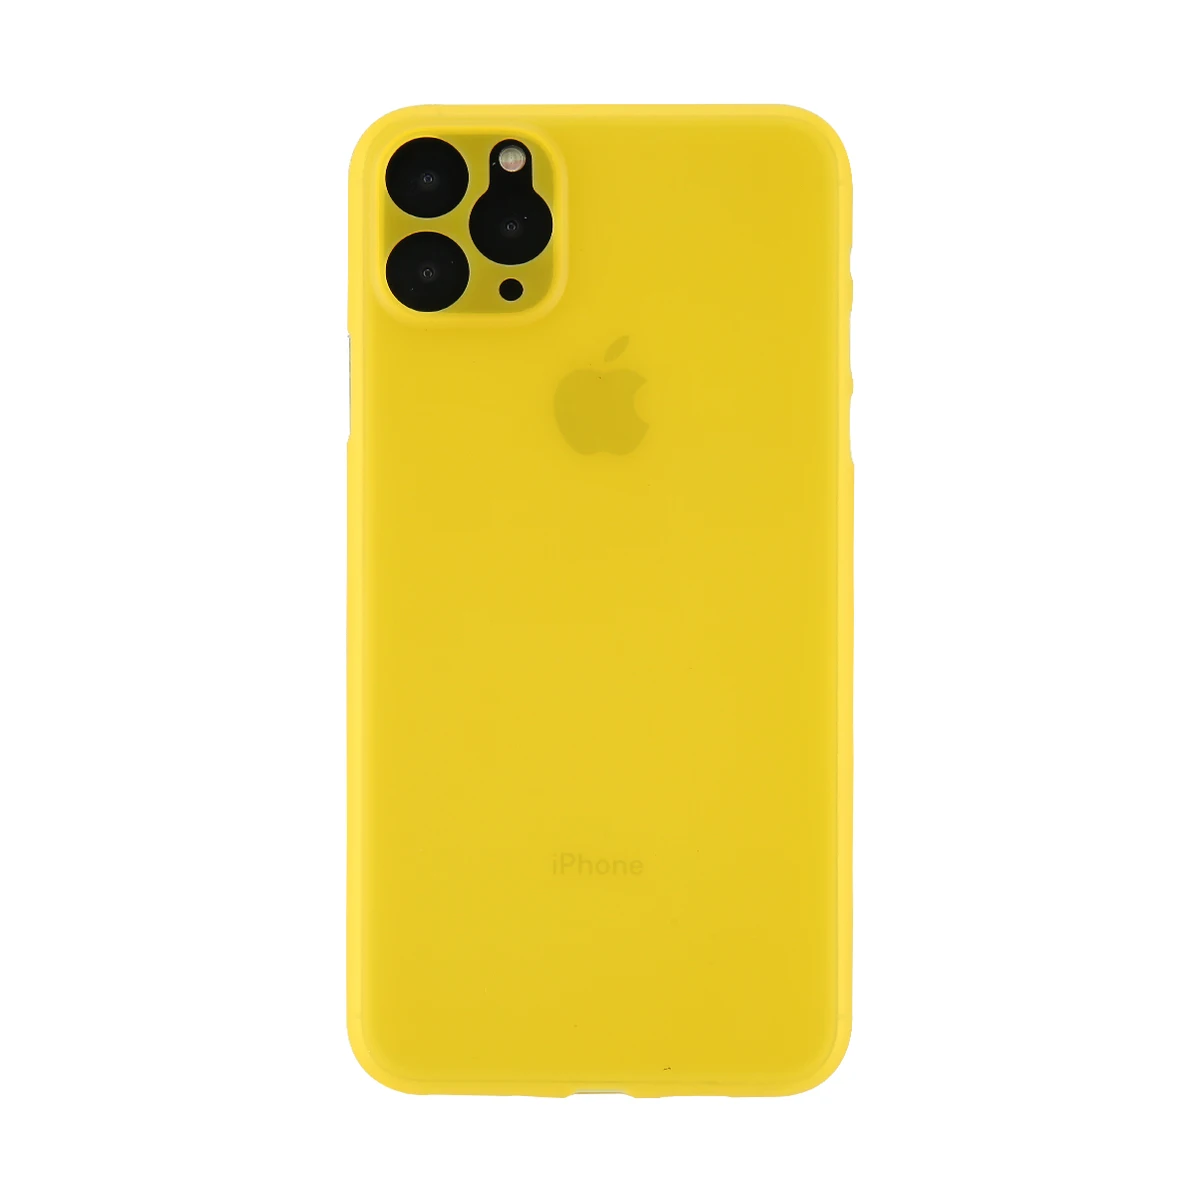 Чехол для телефона Ottwn карамельного цвета для iPhone 11, прозрачный чехол для iPhone 11 Pro Max 11 Pro, Ультратонкий матовый жесткий чехол-накладка из поликарбоната - Цвет: Цвет: желтый